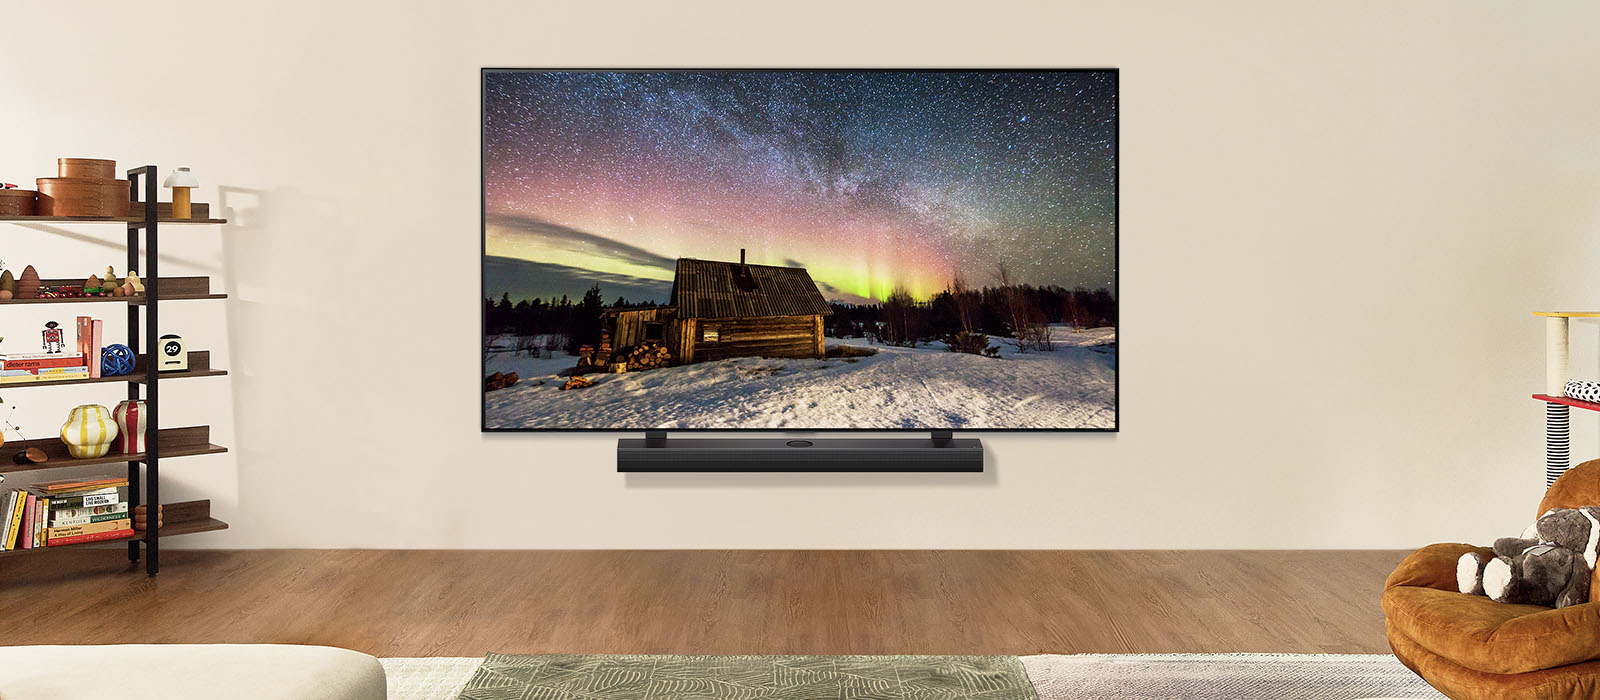 LG-Fernseher und LG Soundbar in einem modernen Wohnraum bei Tag. Das Bild des Polarlichts wird auf dem Bildschirm mit der idealen Helligkeitsstufe angezeigt.